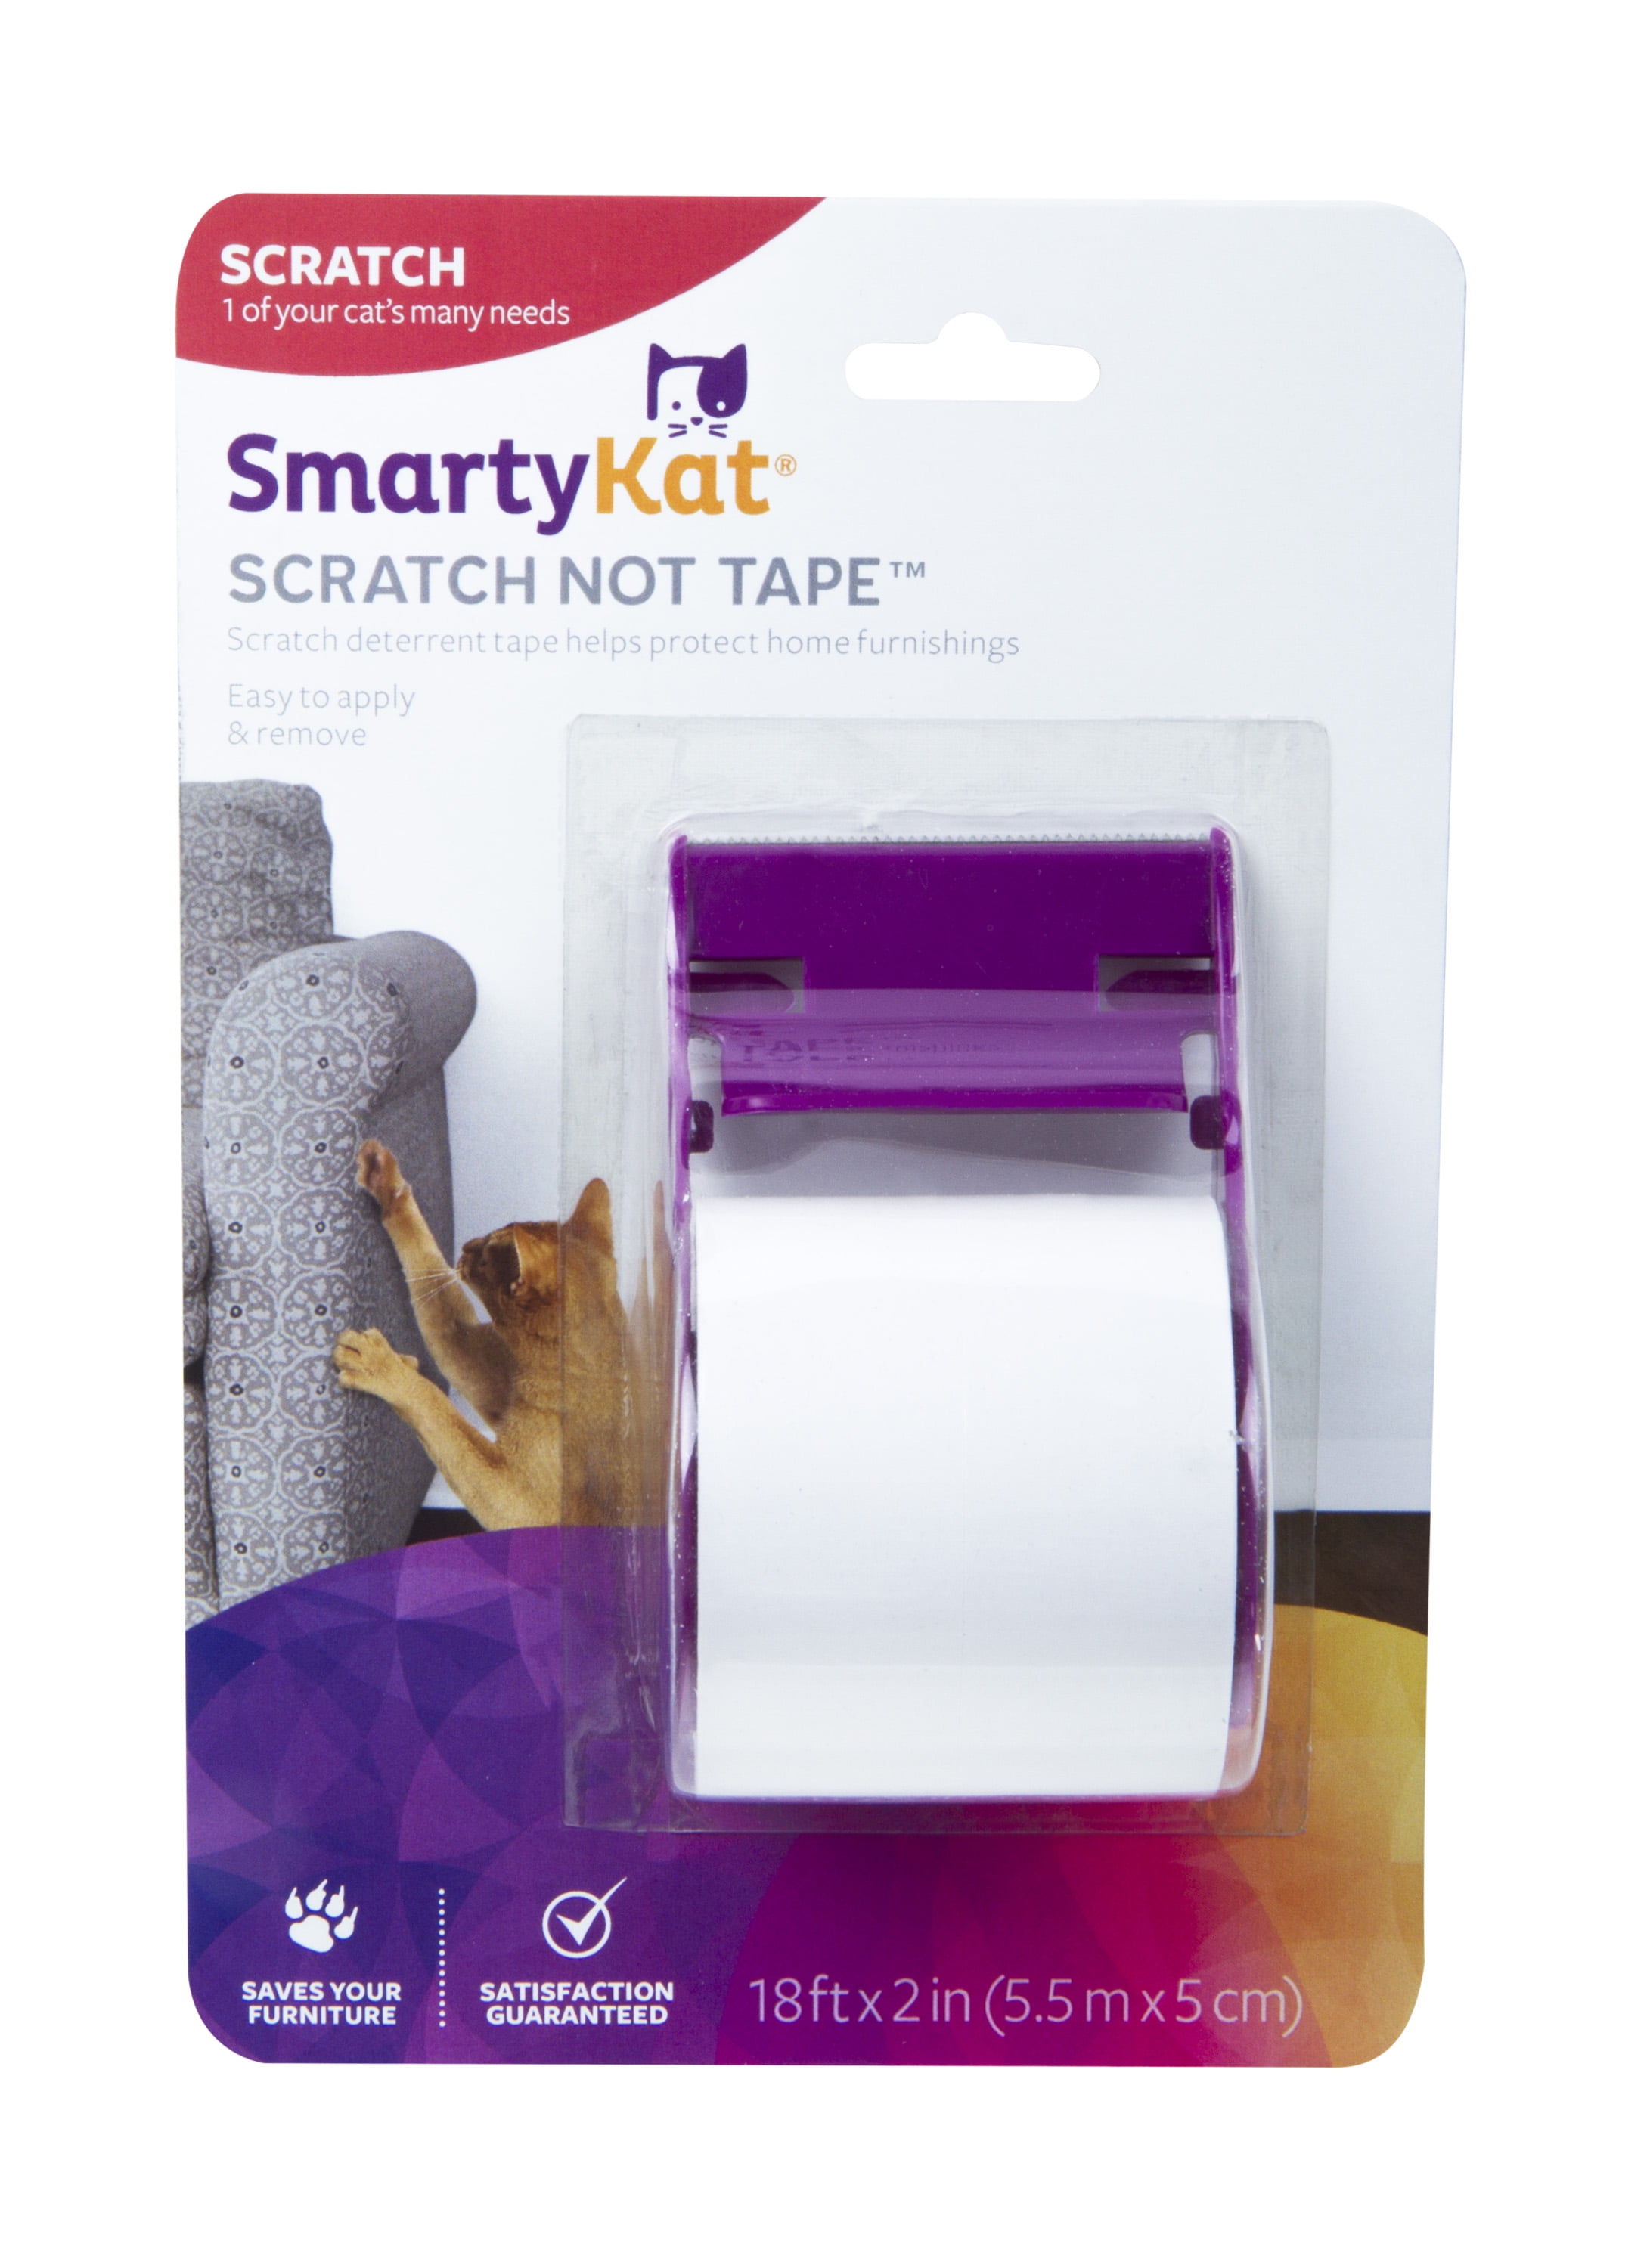 Smartykat Anti Cat Scratch Tape Deterrent Walmart Com Walmart Com